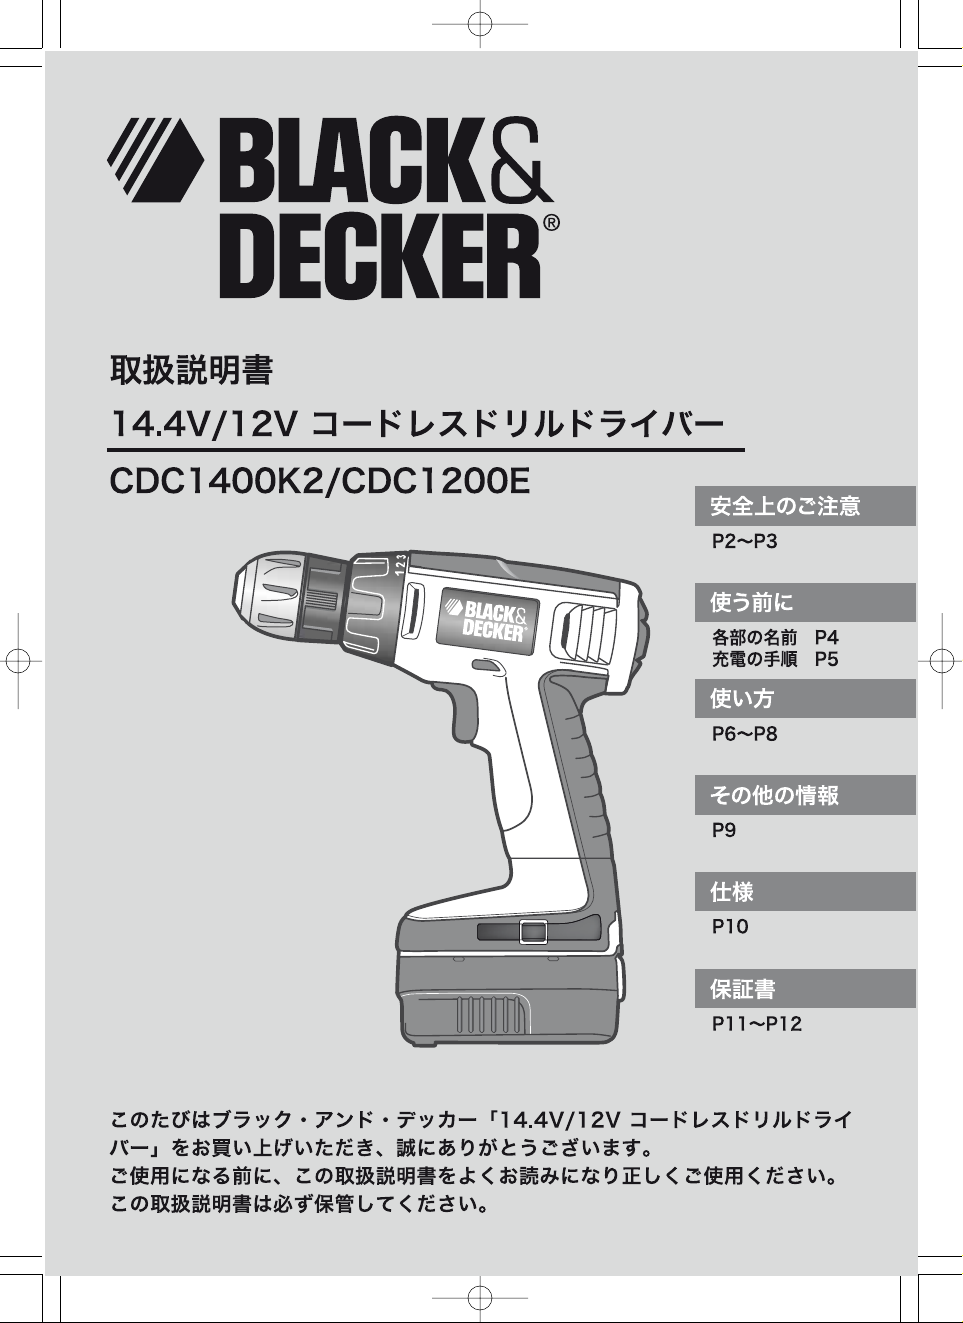 説明書 Black and Decker CDC1200 ドリルドライバー